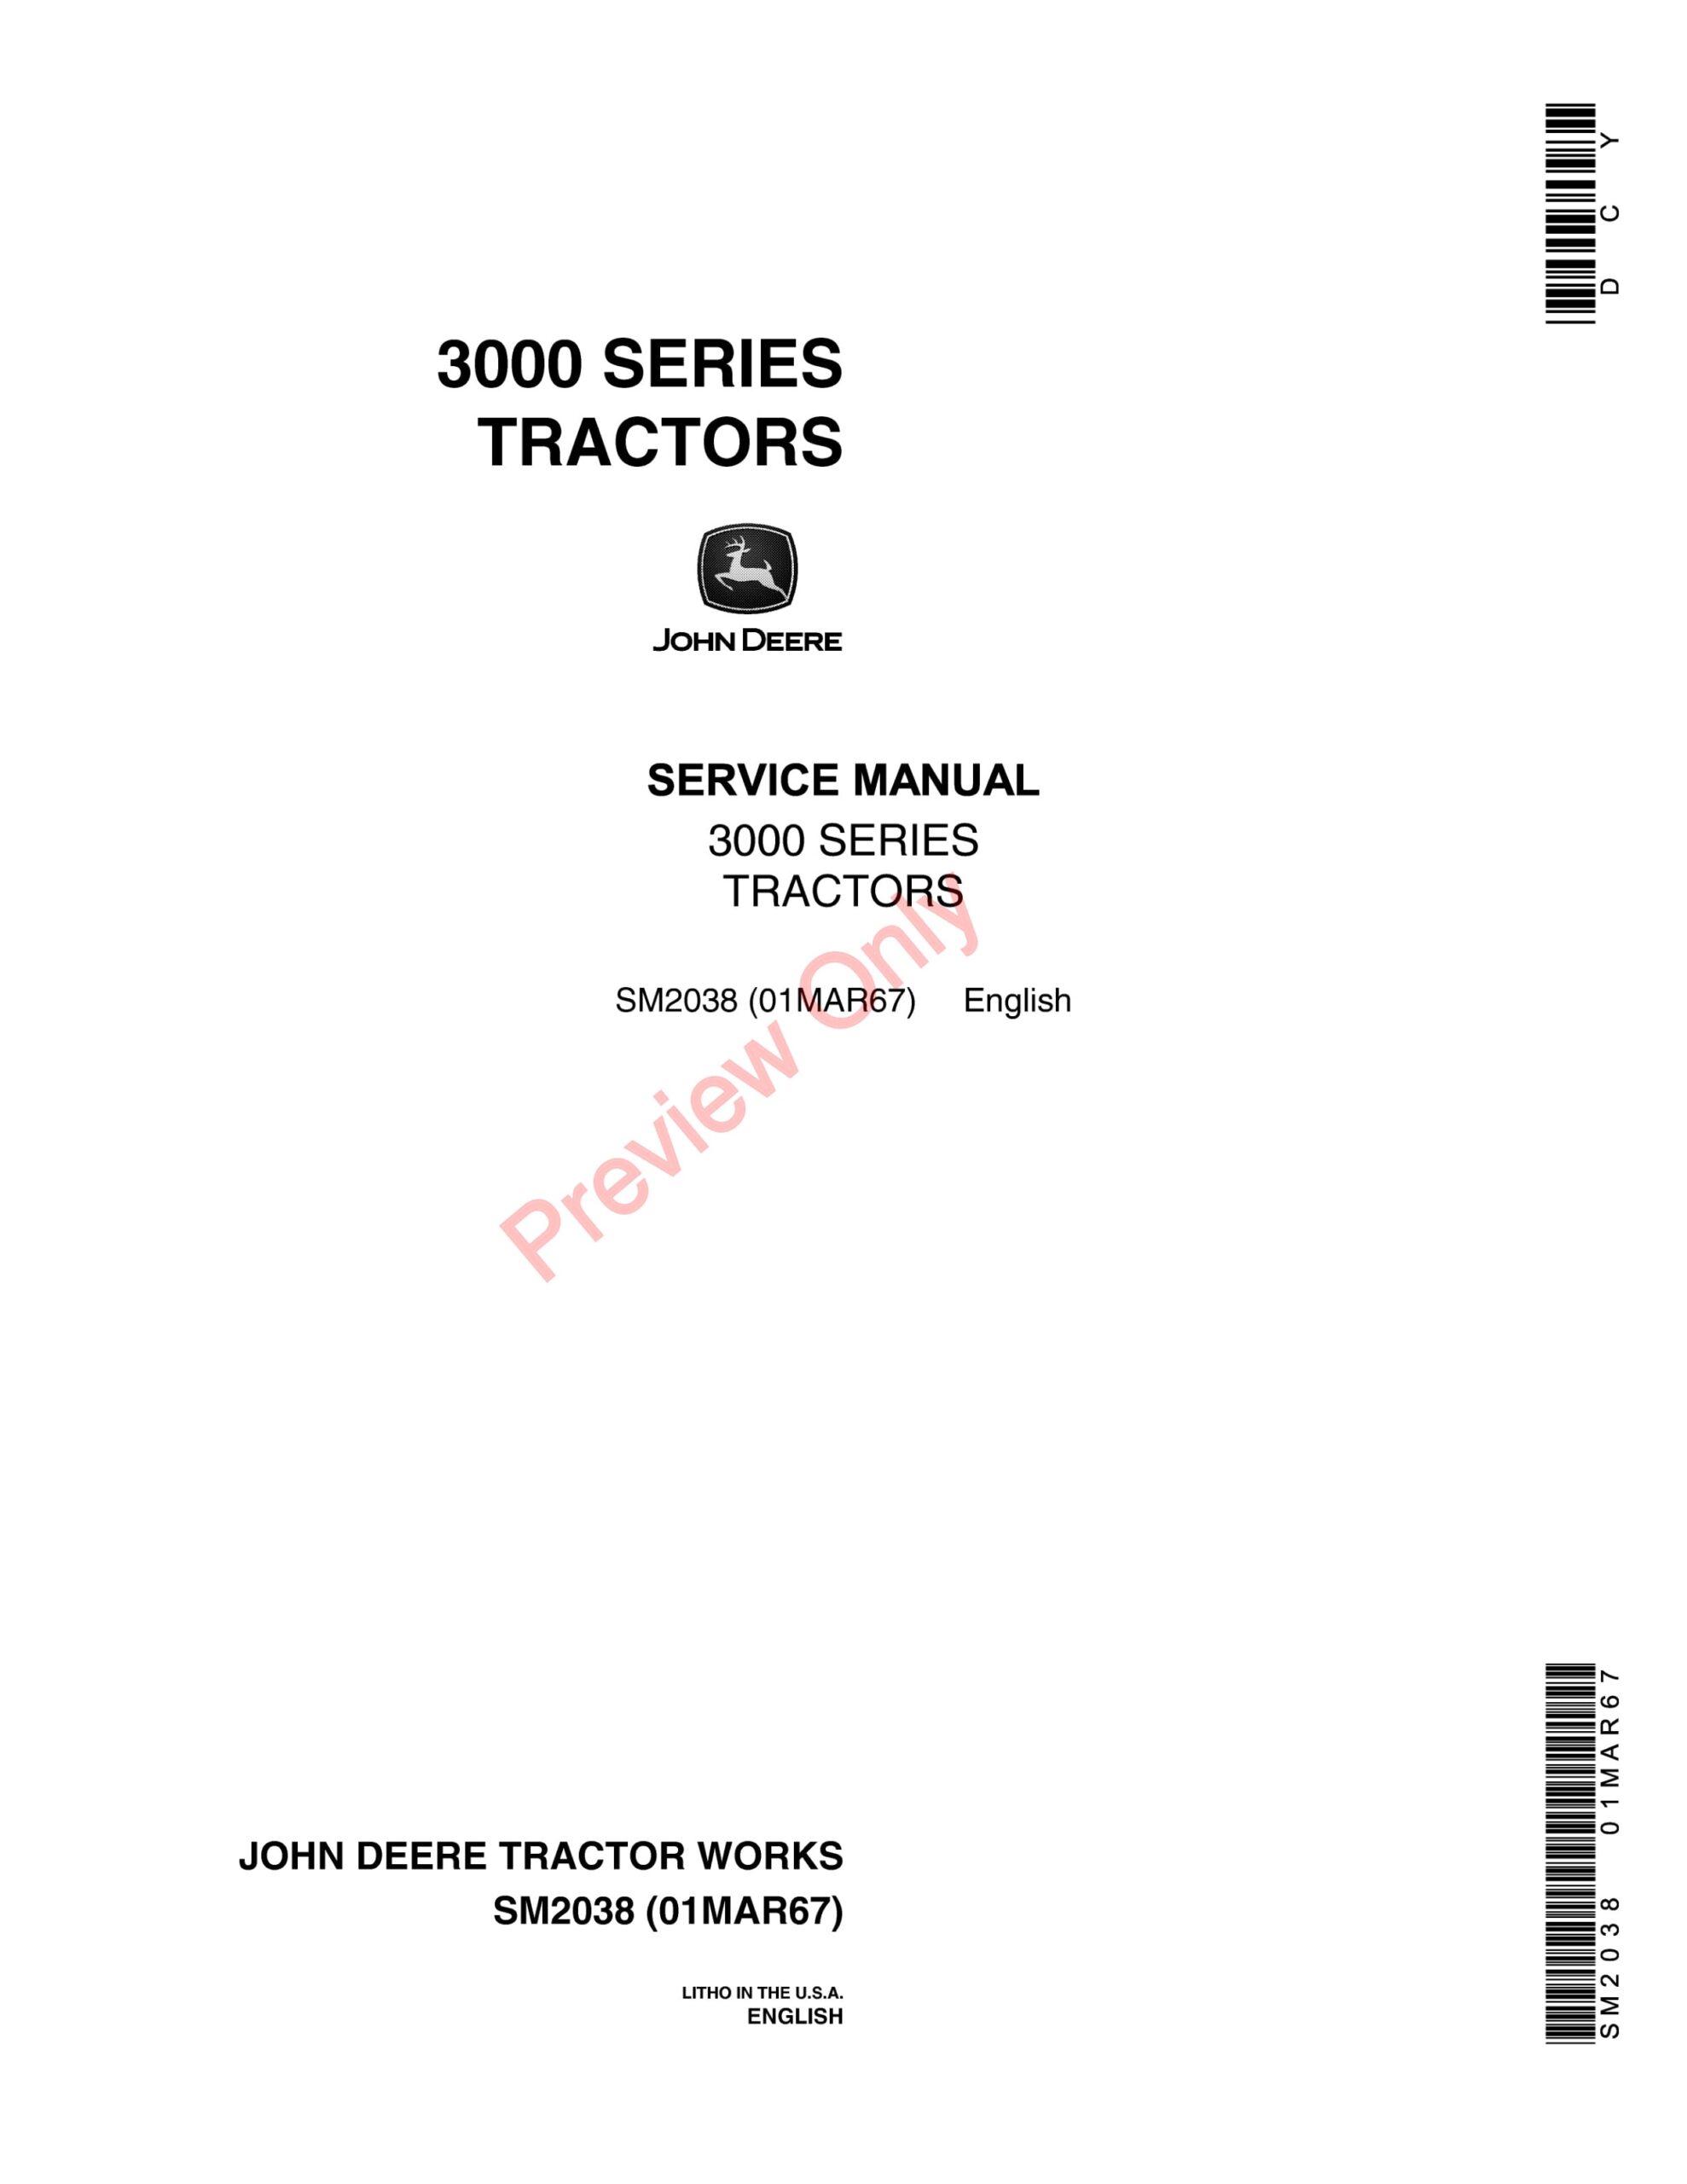 John Deere 3000 Series Tractors Service Manual SM2038 01MAR67-1